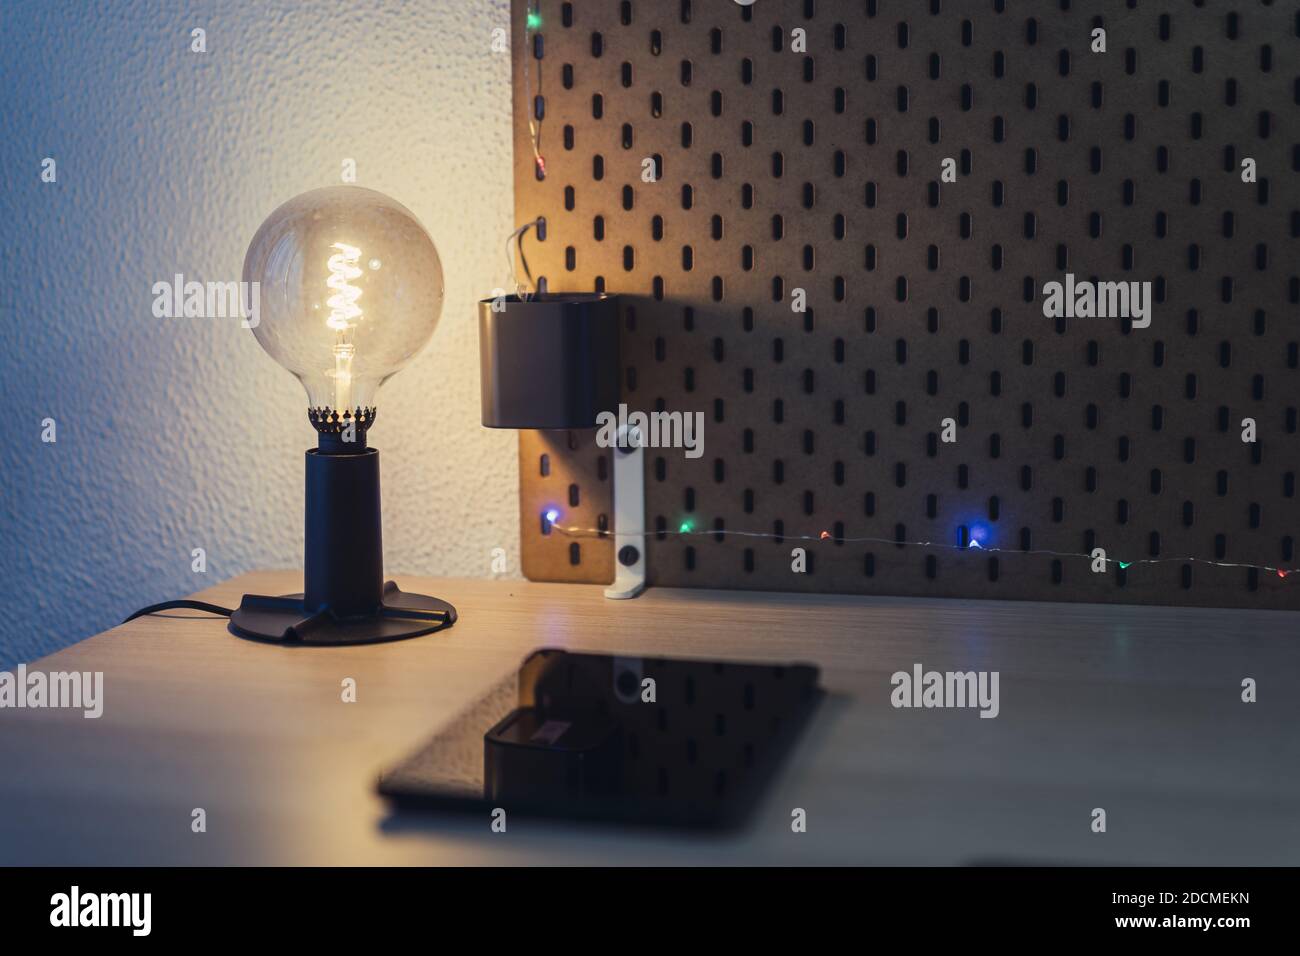 Eine Nahaufnahme einer dekorativen Glühbirne Lampe und Ein Tablet auf einem Nachttisch Stockfoto